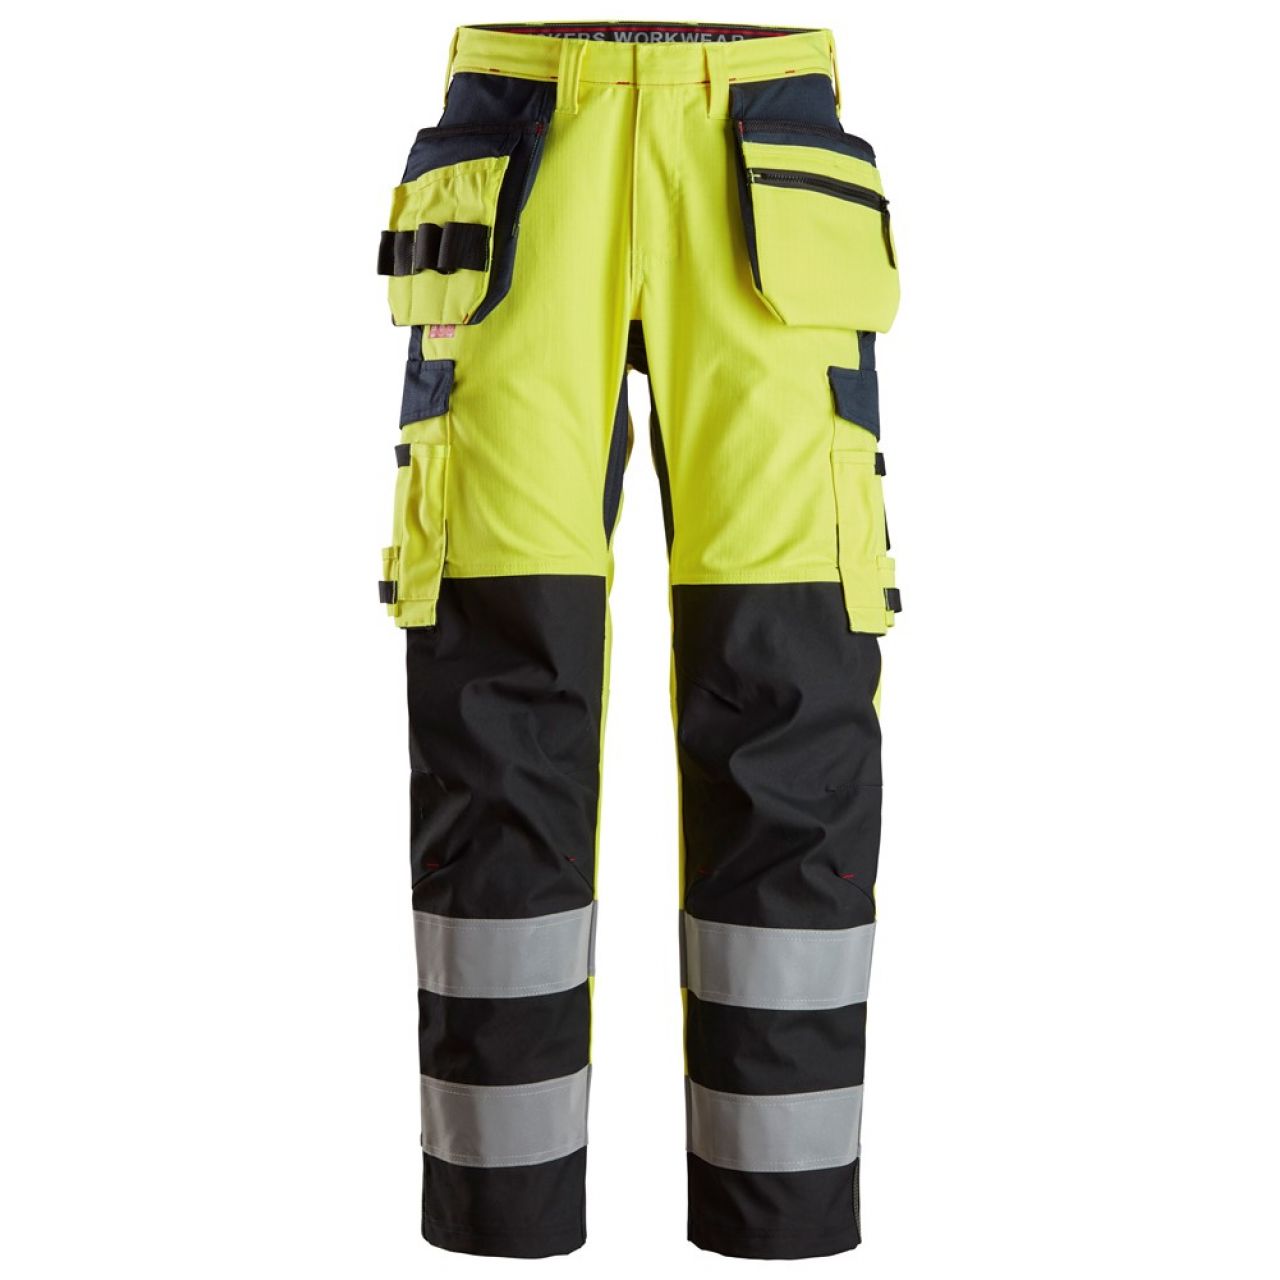 6264 Pantalones largos de trabajo de alta visibilidad clase 2 con bolsillos flotantes y espinilla reforzada ProtecWork amarillo-azul marino talla 64